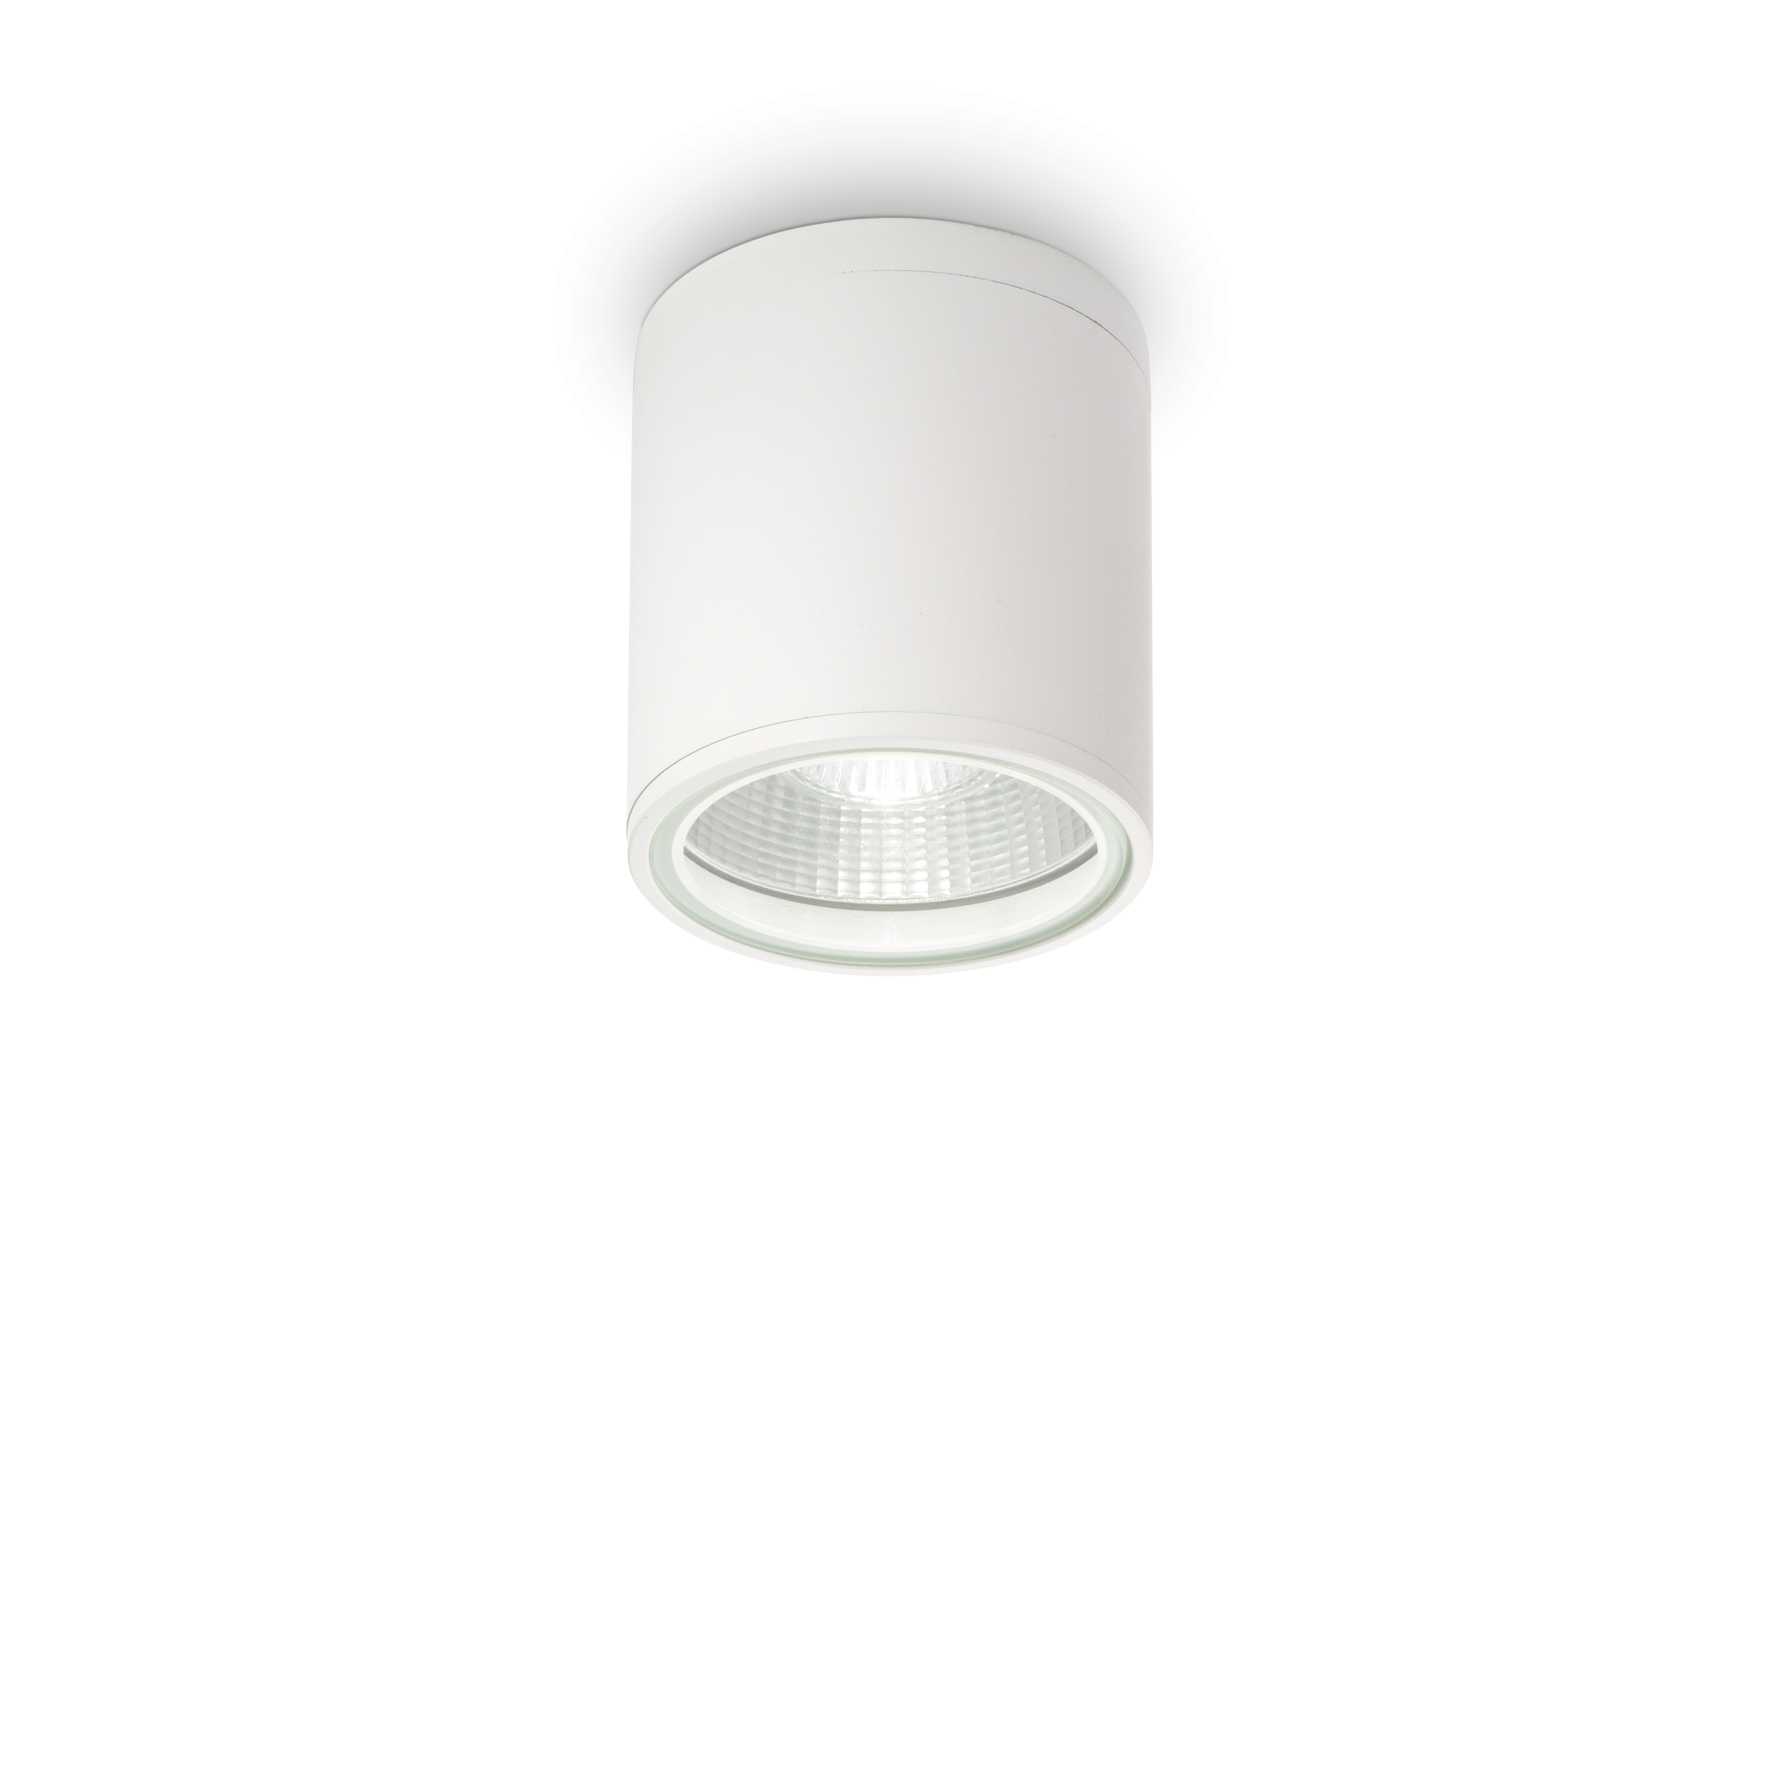 AD hotelska oprema Vanjka stropna lampa Gun pl1- Bijele boje slika proizvoda